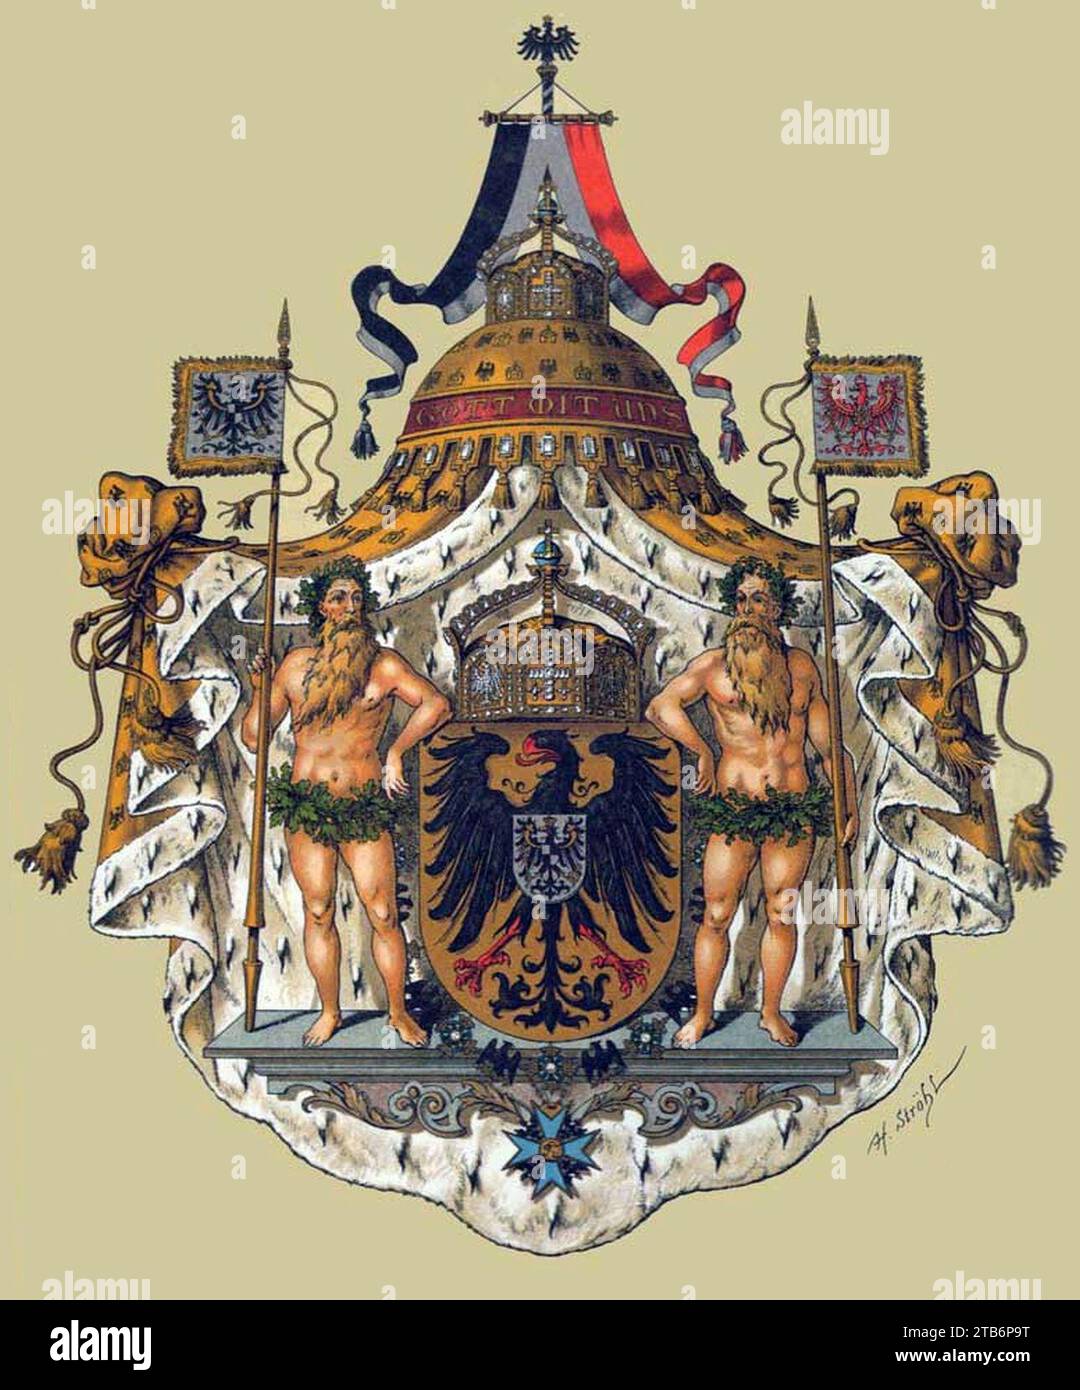 Wappen Deutsches Reich - Reichswappen (Grosses). Stock Photo